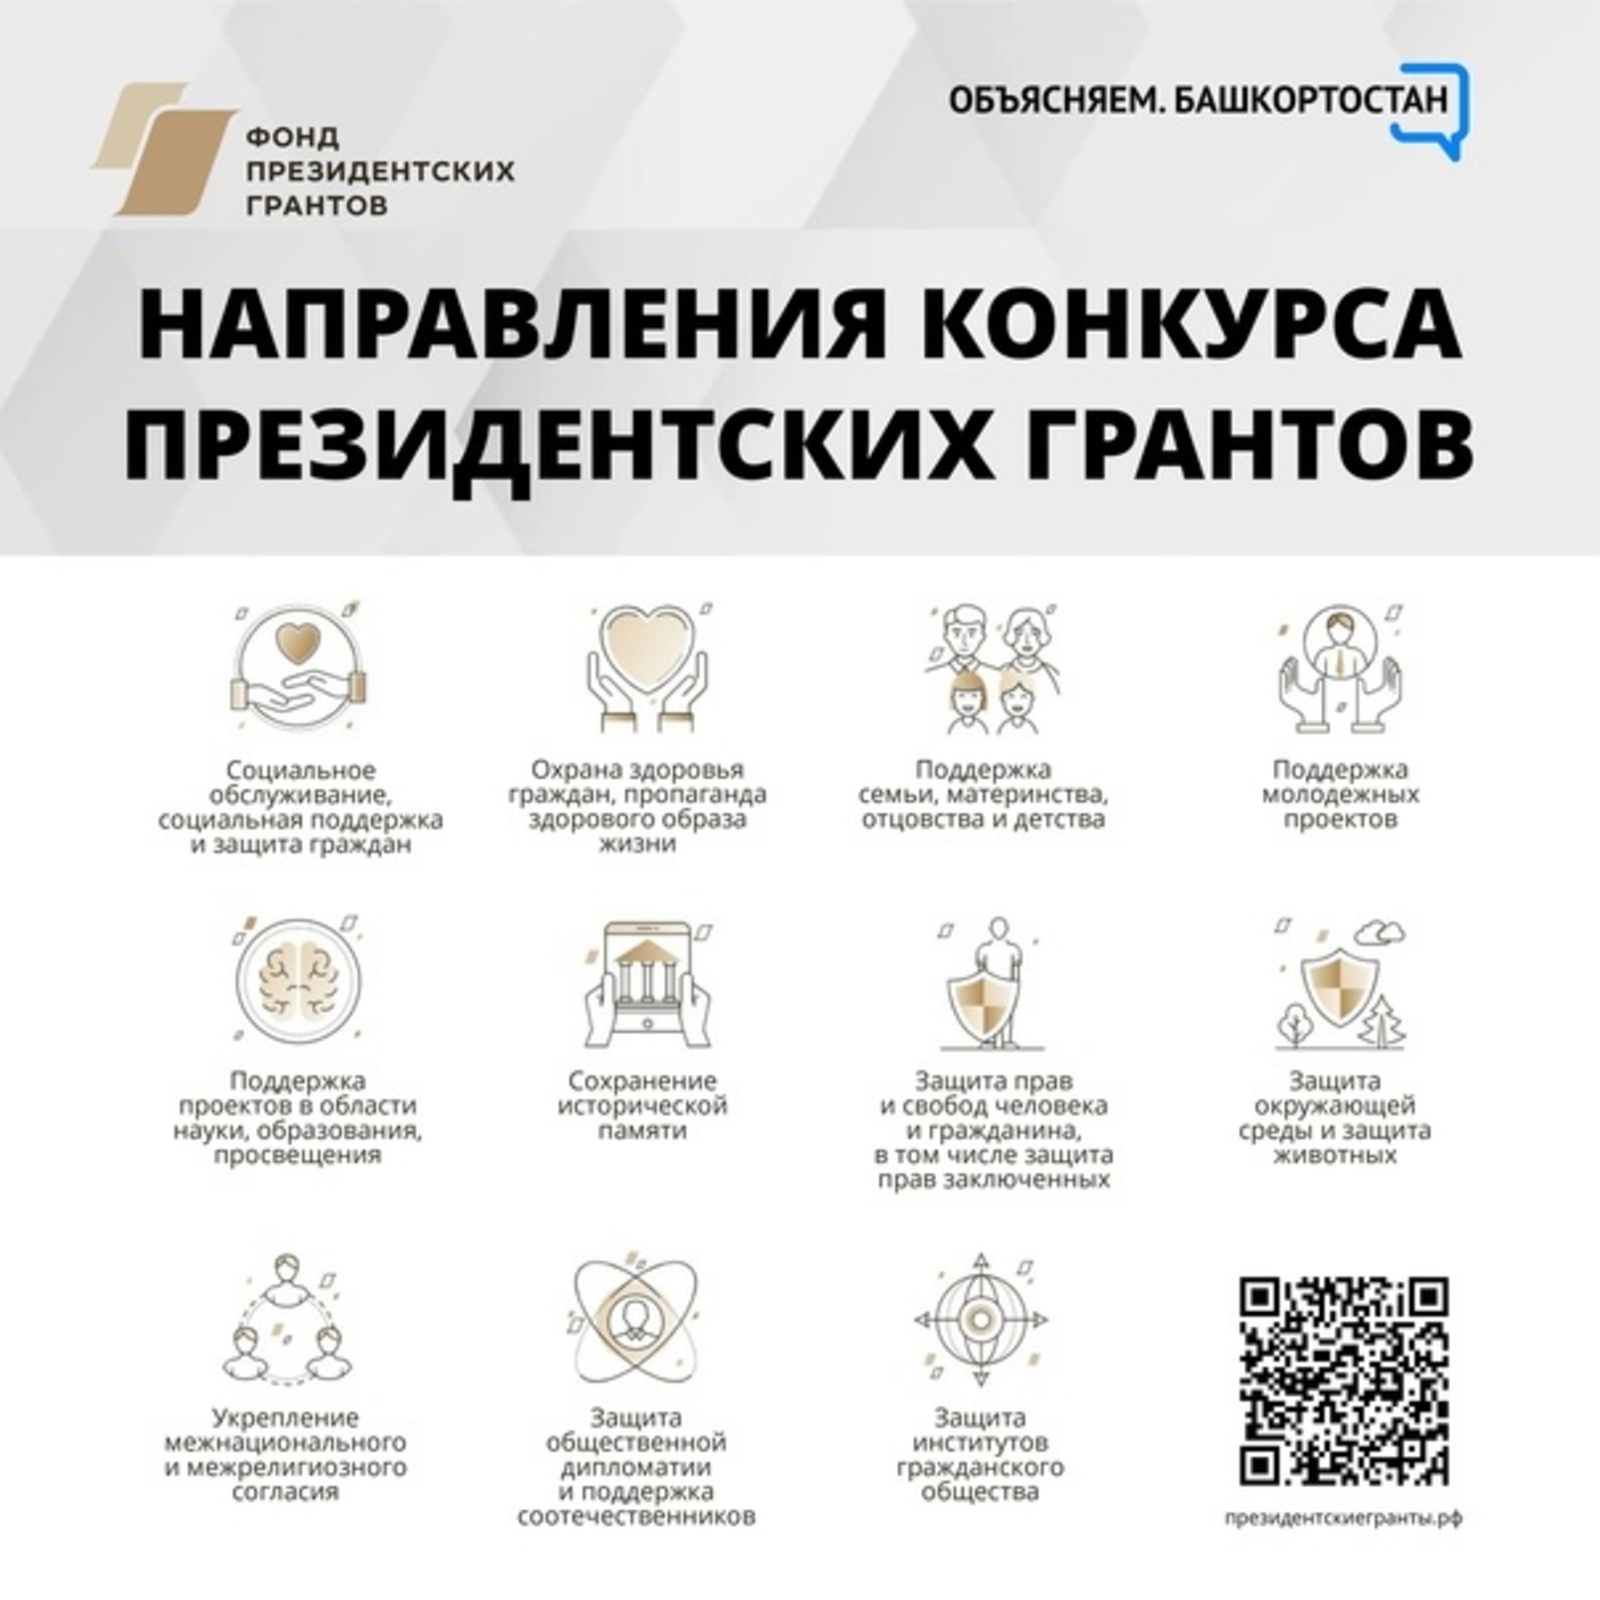 НКО Башкортостана могут принять участие во втором конкурсе президентских грантов 2023 года – прием заявок начнется 1 февраля